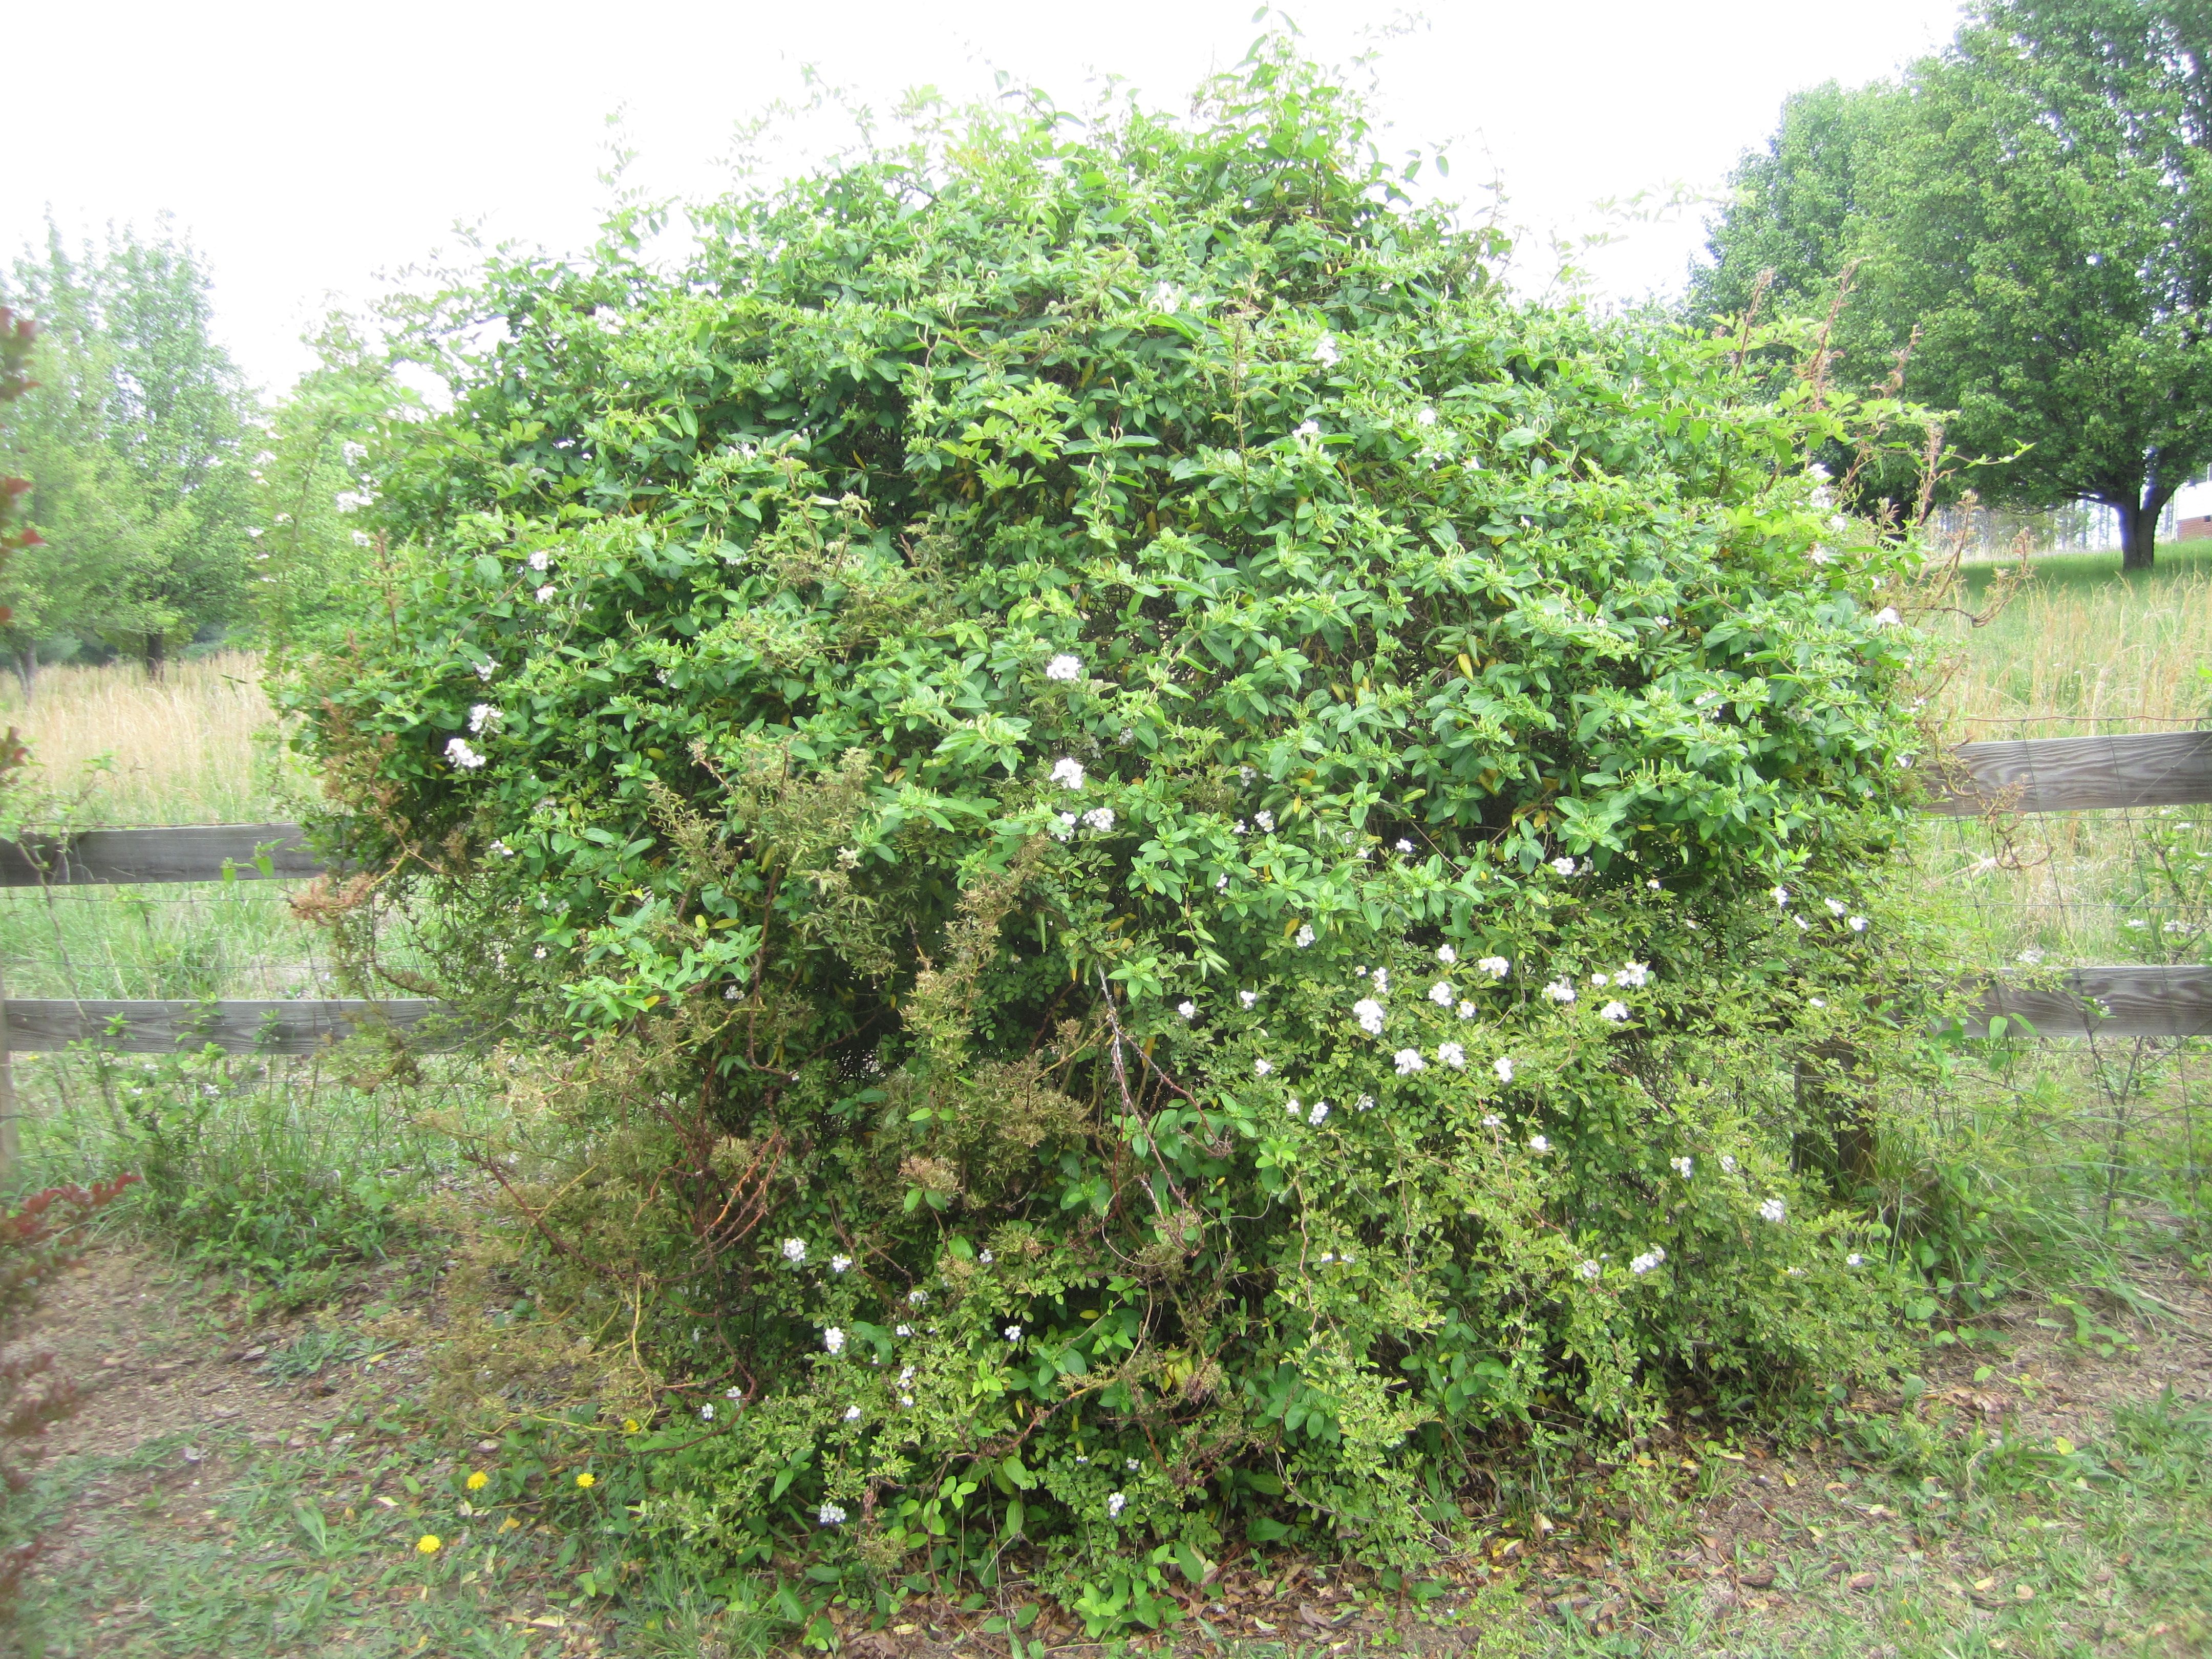 wild bushes shrubs | Bushes, Shrubs and Plants | Pinterest | Shrub ...